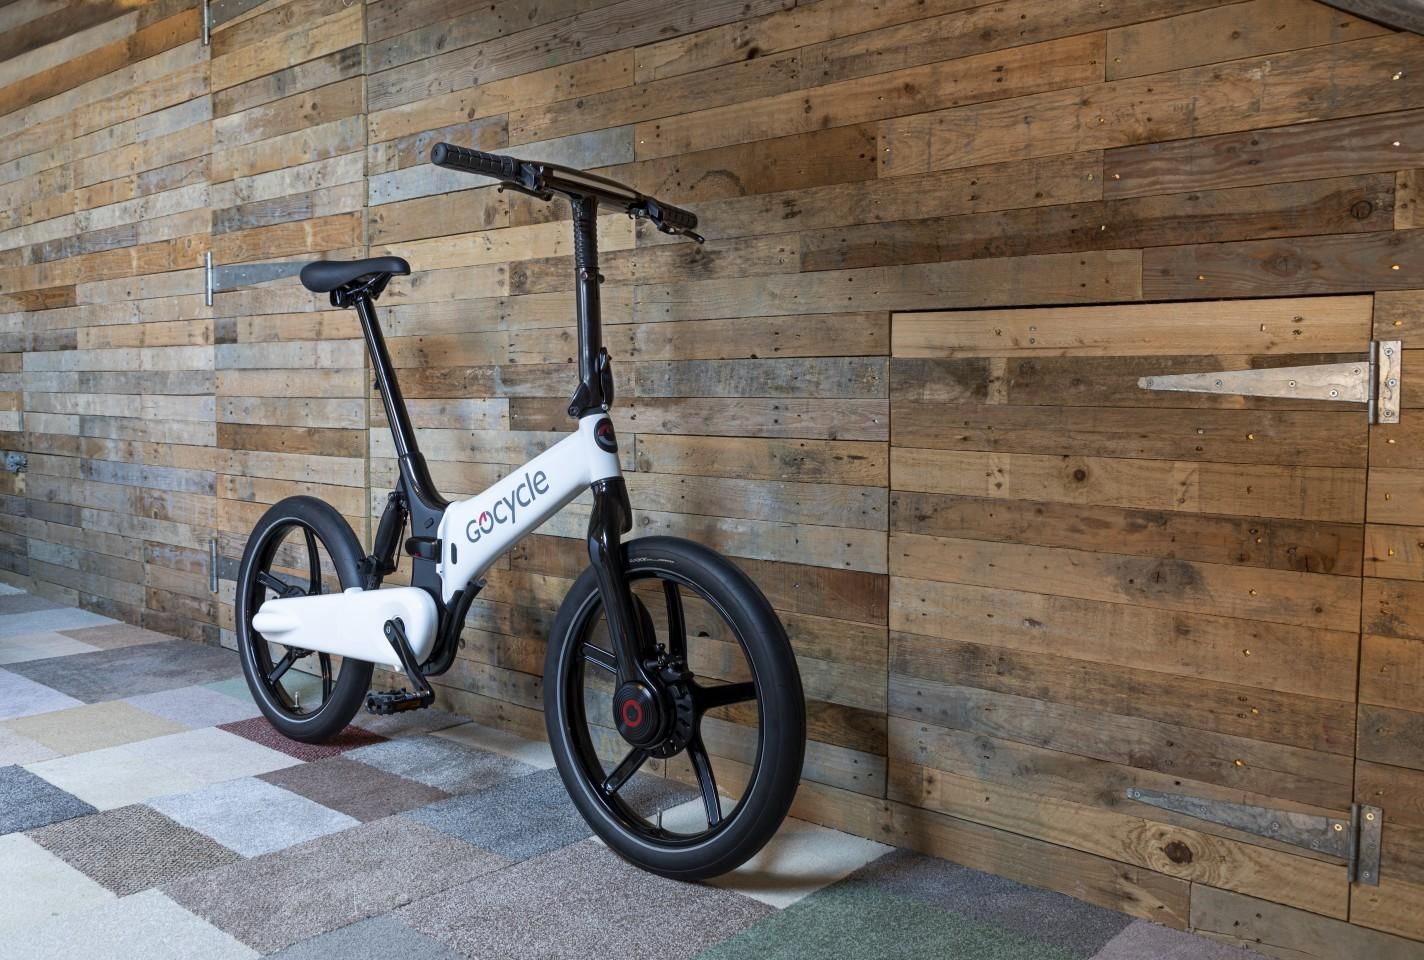 Gocycle представил новую линейку складных велосипедов G4